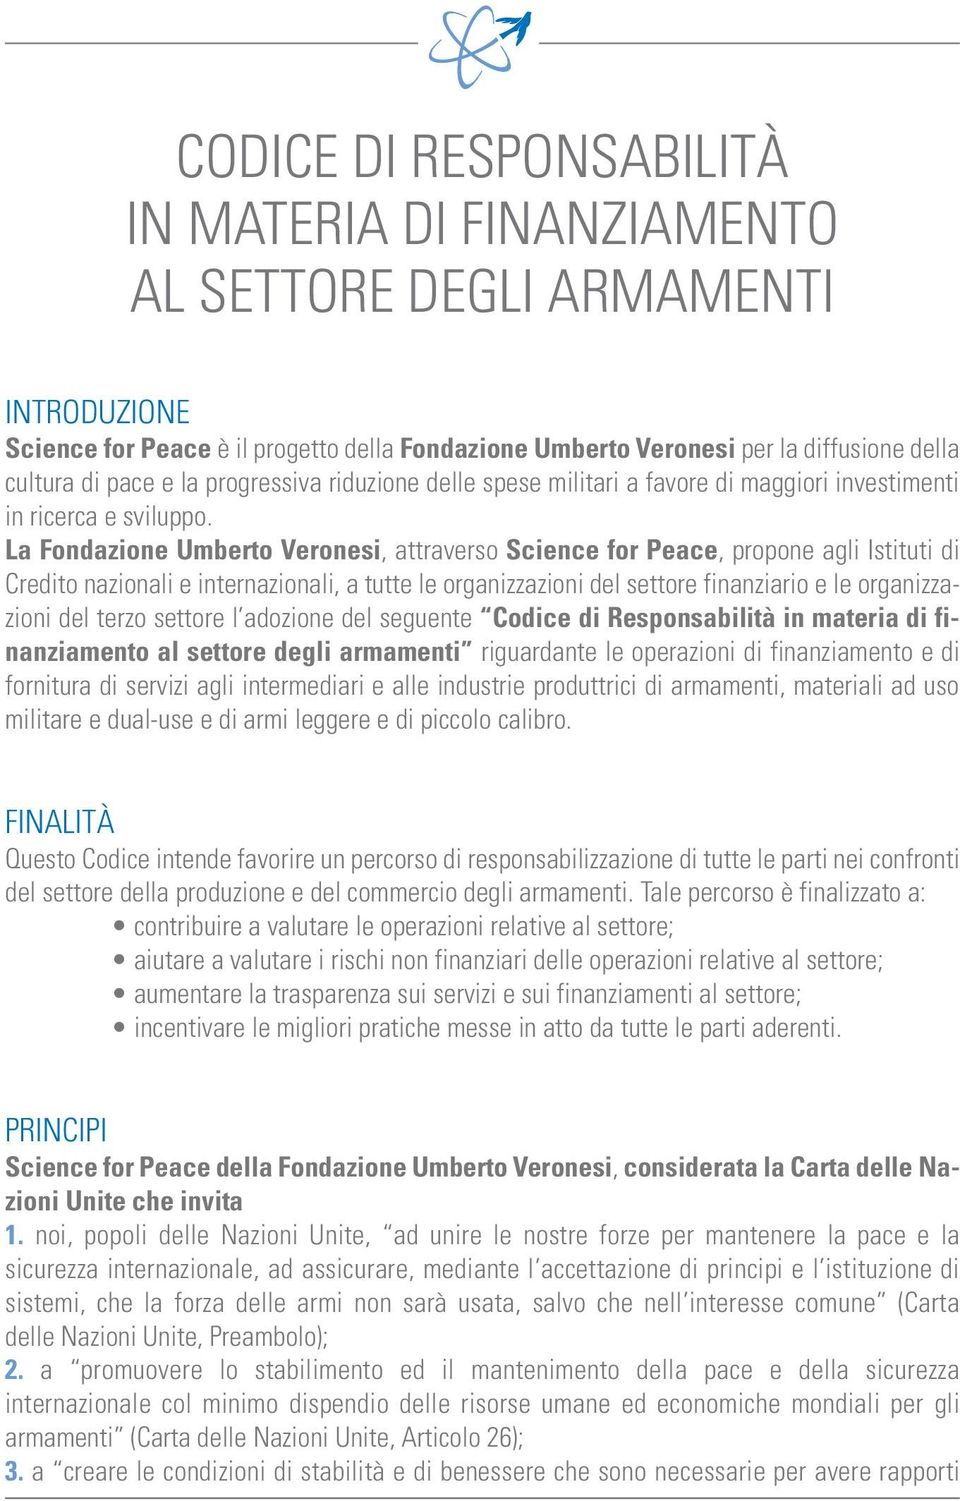 La Fondazione Umberto Veronesi, attraverso Science for Peace, propone agli Istituti di Credito nazionali e internazionali, a tutte le organizzazioni del settore finanziario e le organizzazioni del